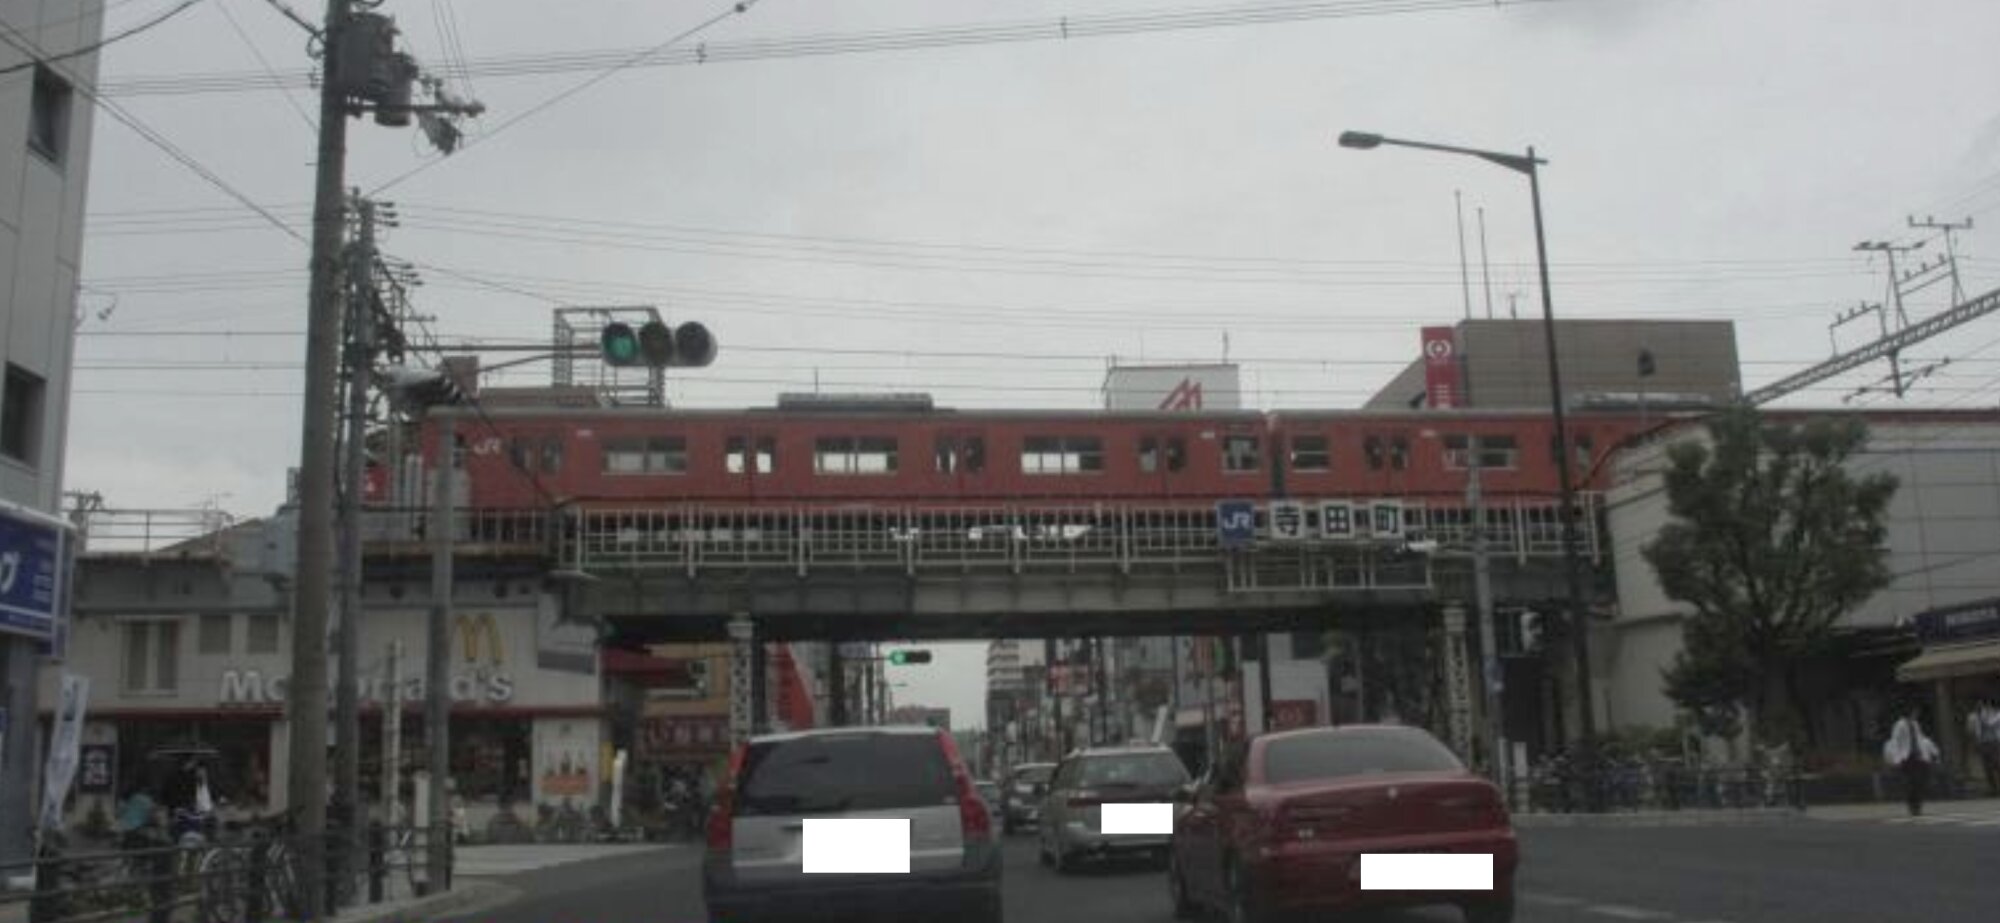 2009年6月撮影のJR寺田町駅付近。左下に昔のマクドナルド店舗。右側が寺田町駅入り口。懐かしいオレンジ色の大阪環状線車両が高架を走っている